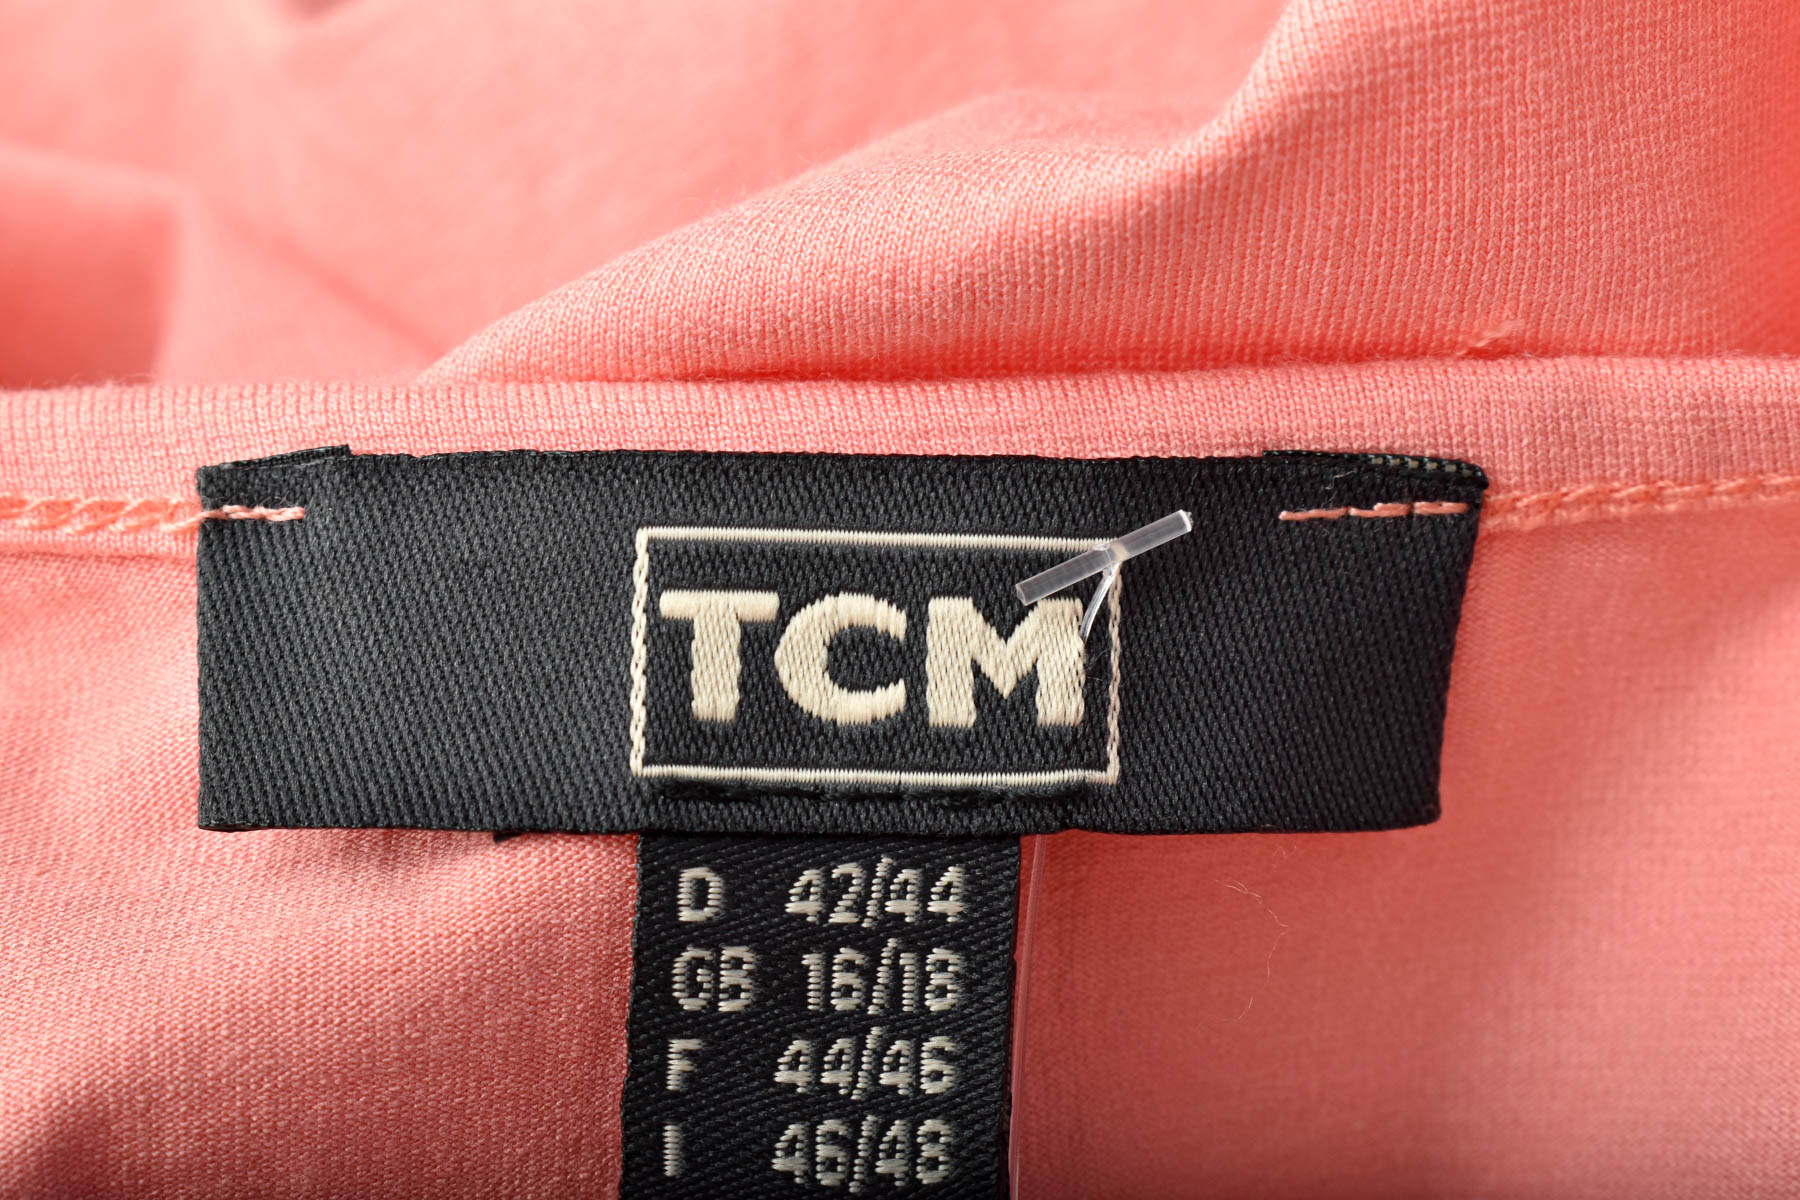 Γυναικεία μπλούζα - TCM - 2